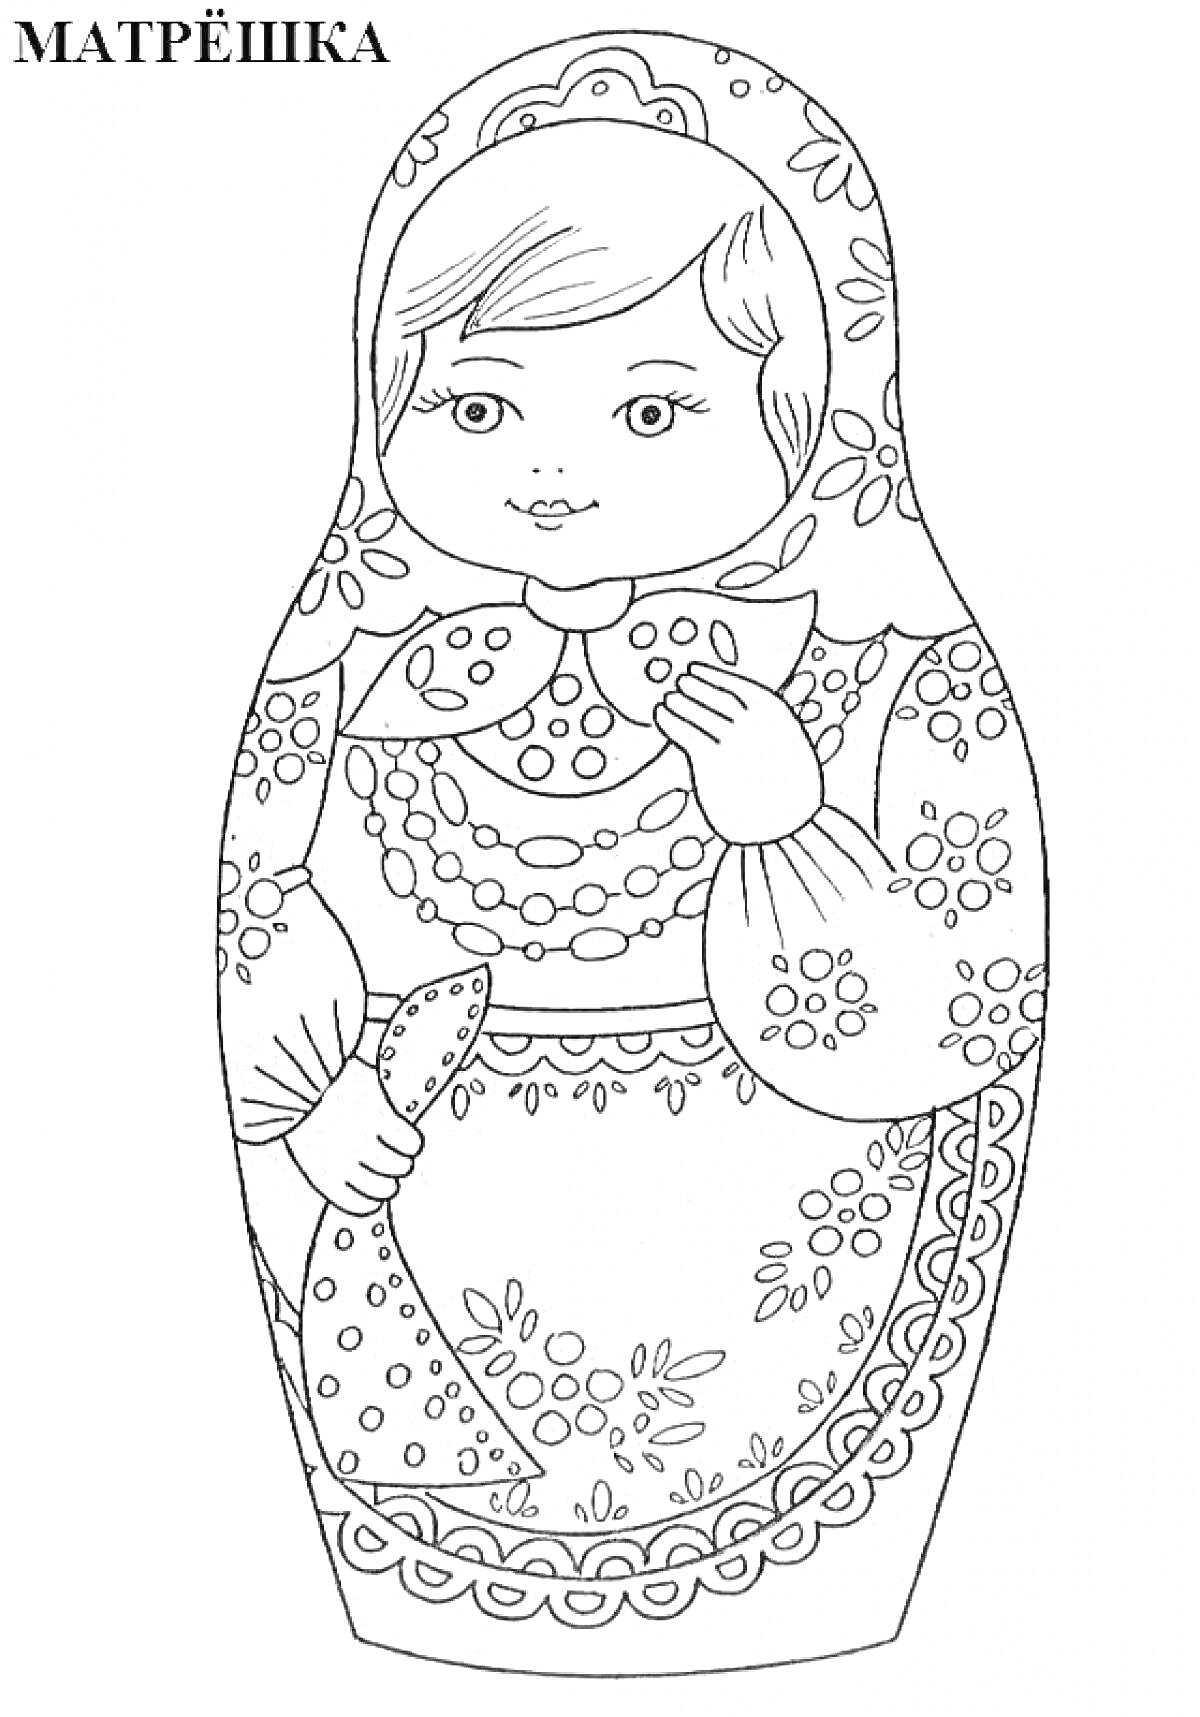 Матрешка с узорами, платок на голове, традиционная русская кукла